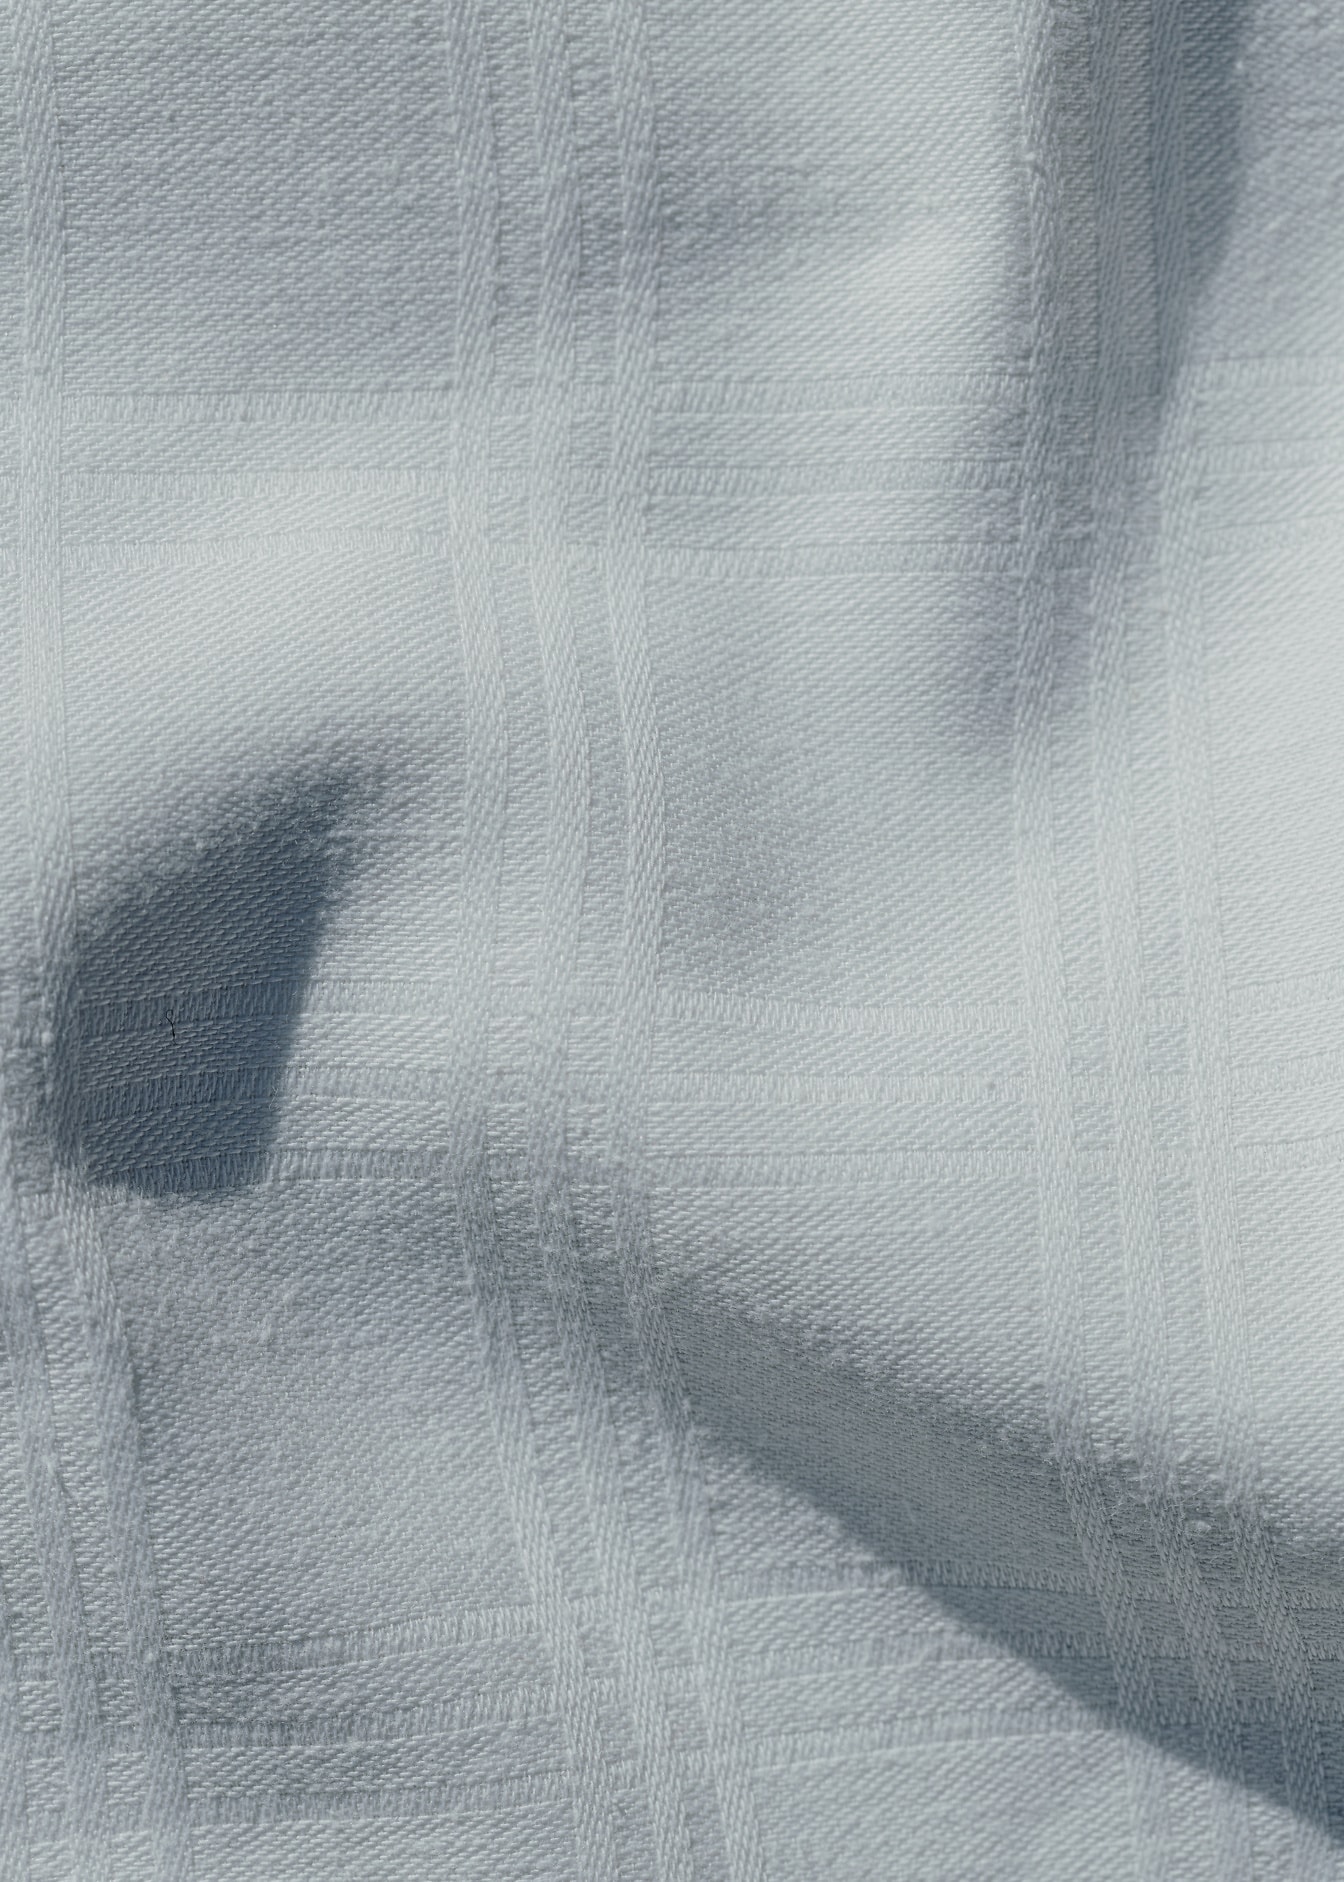 Zbliżenie tekstury pomarszczonej białej tkaniny bawełnianej z prostokątnym wzorem